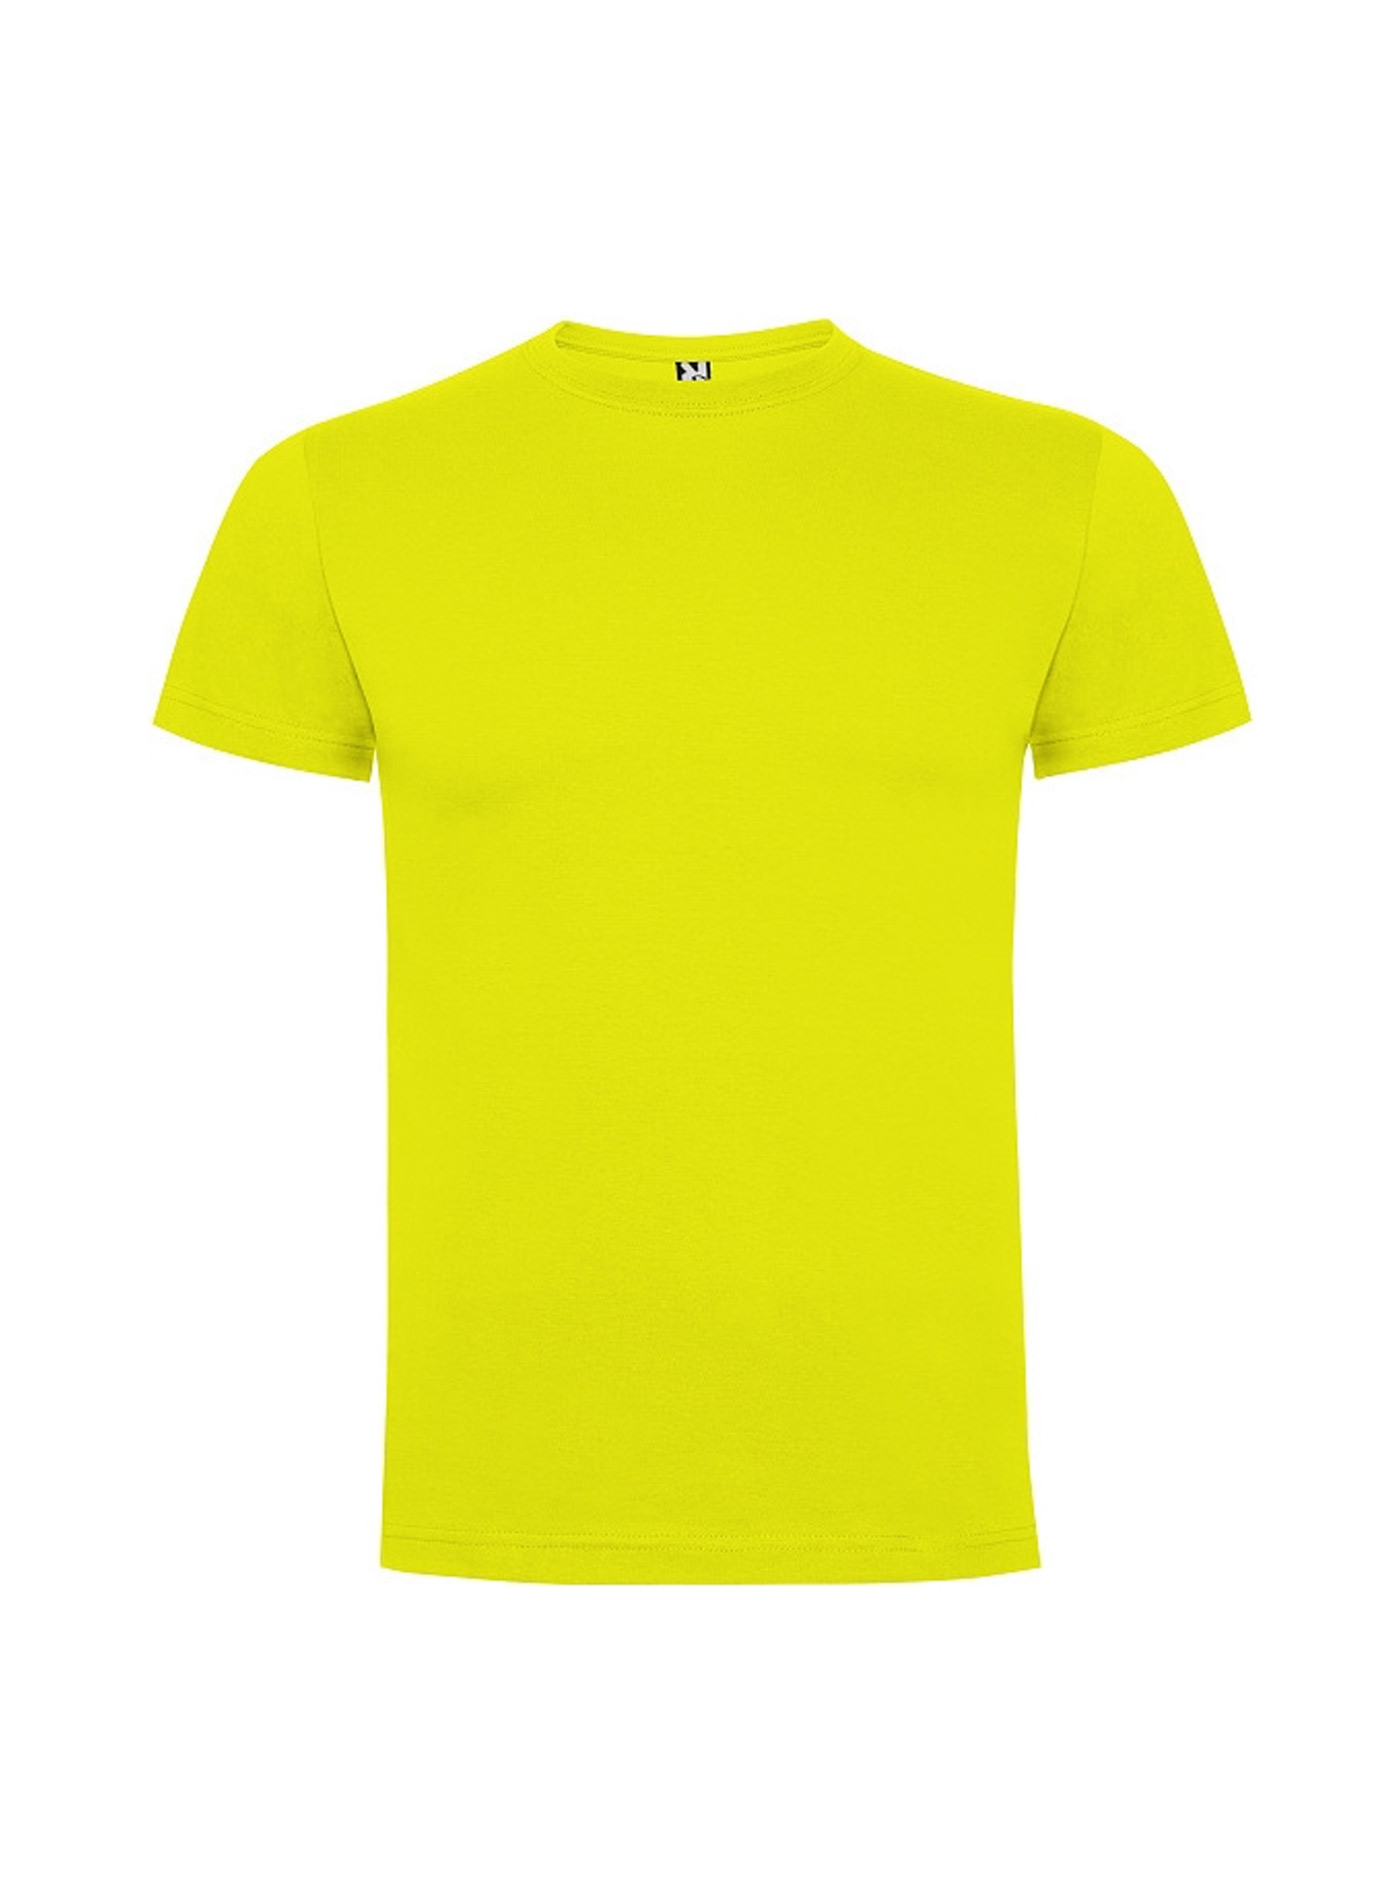 Dětské tričko Roly Dogo premium - Žlutozelená 3-4